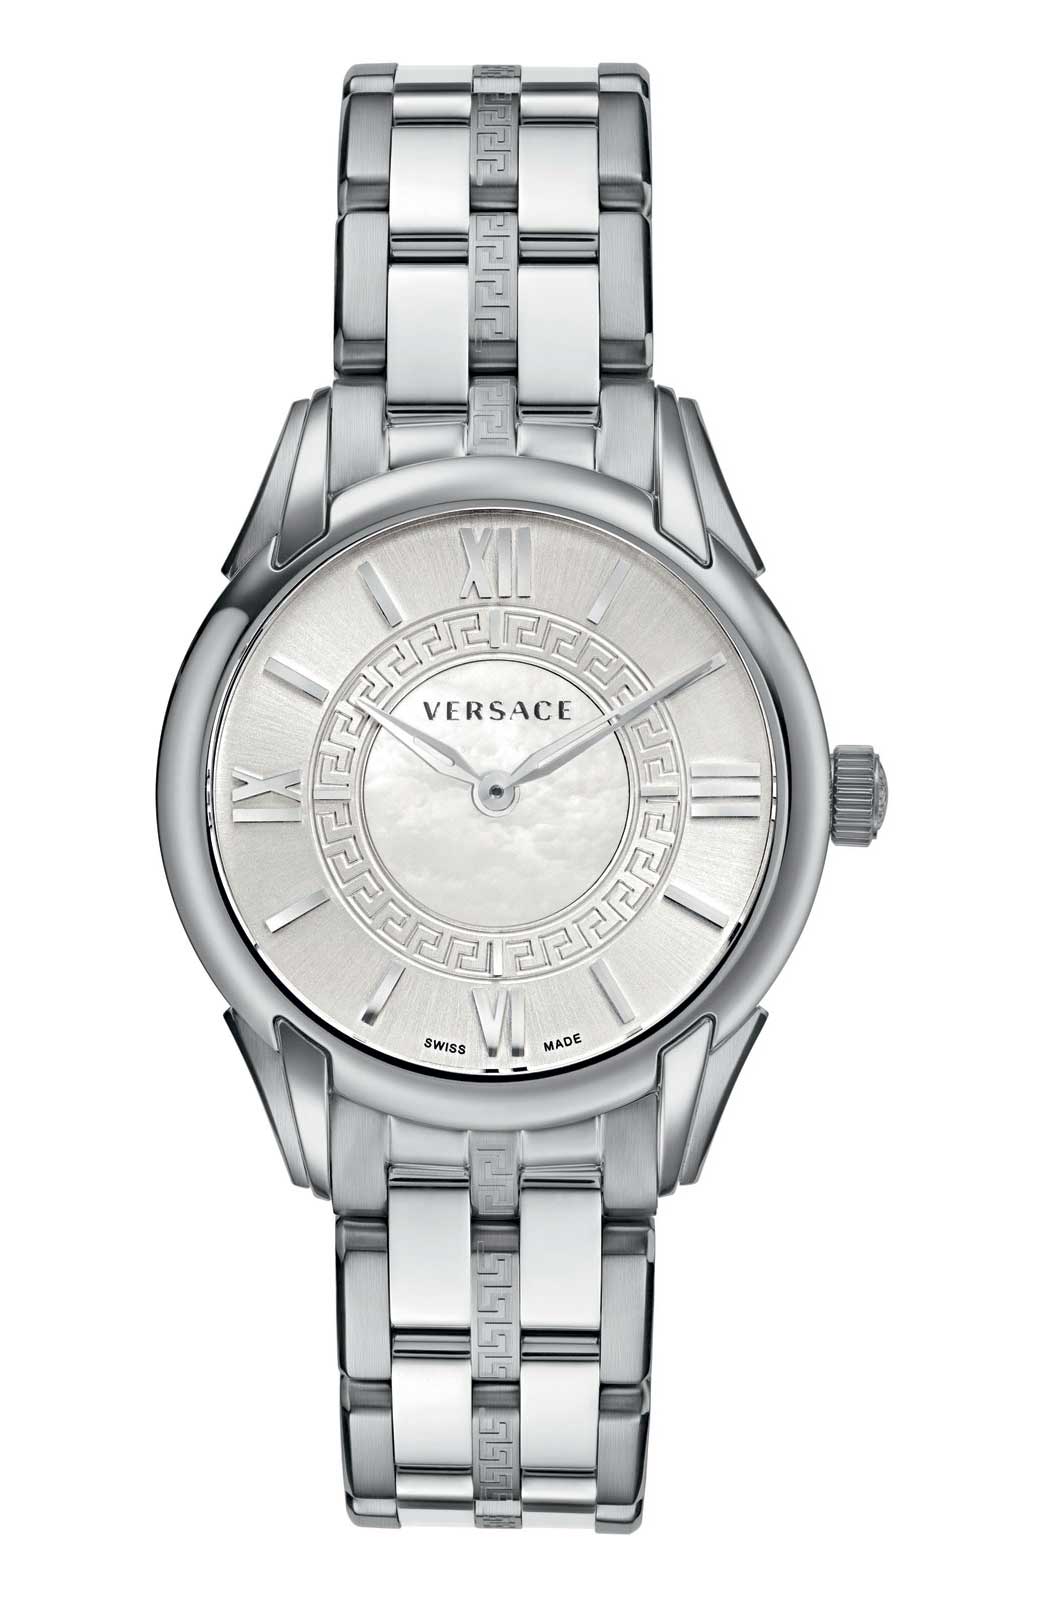 Versace QUARTZ watch 762.3 STEEL